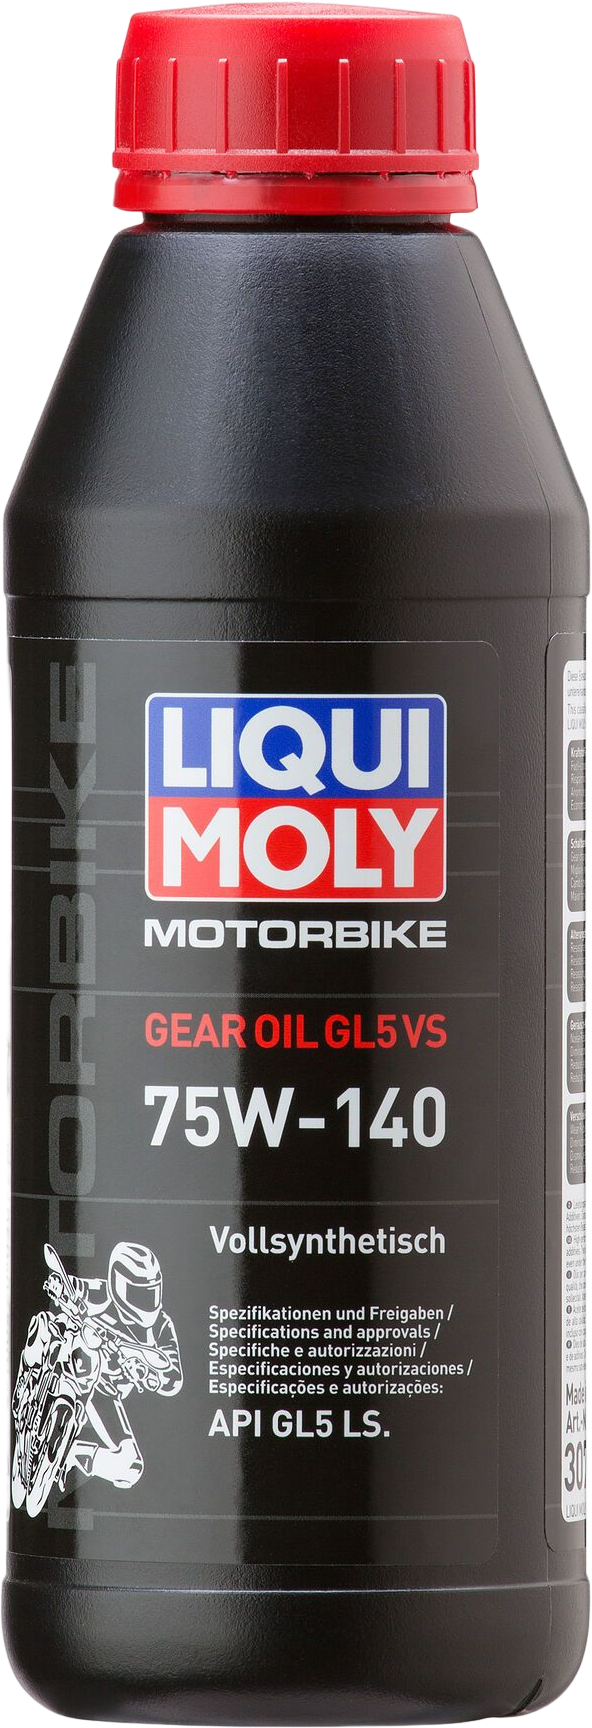 Liqui Moly Motorbike Gear Oil 75W-140 (GL5) VS, 6 x 500 ml detail 2